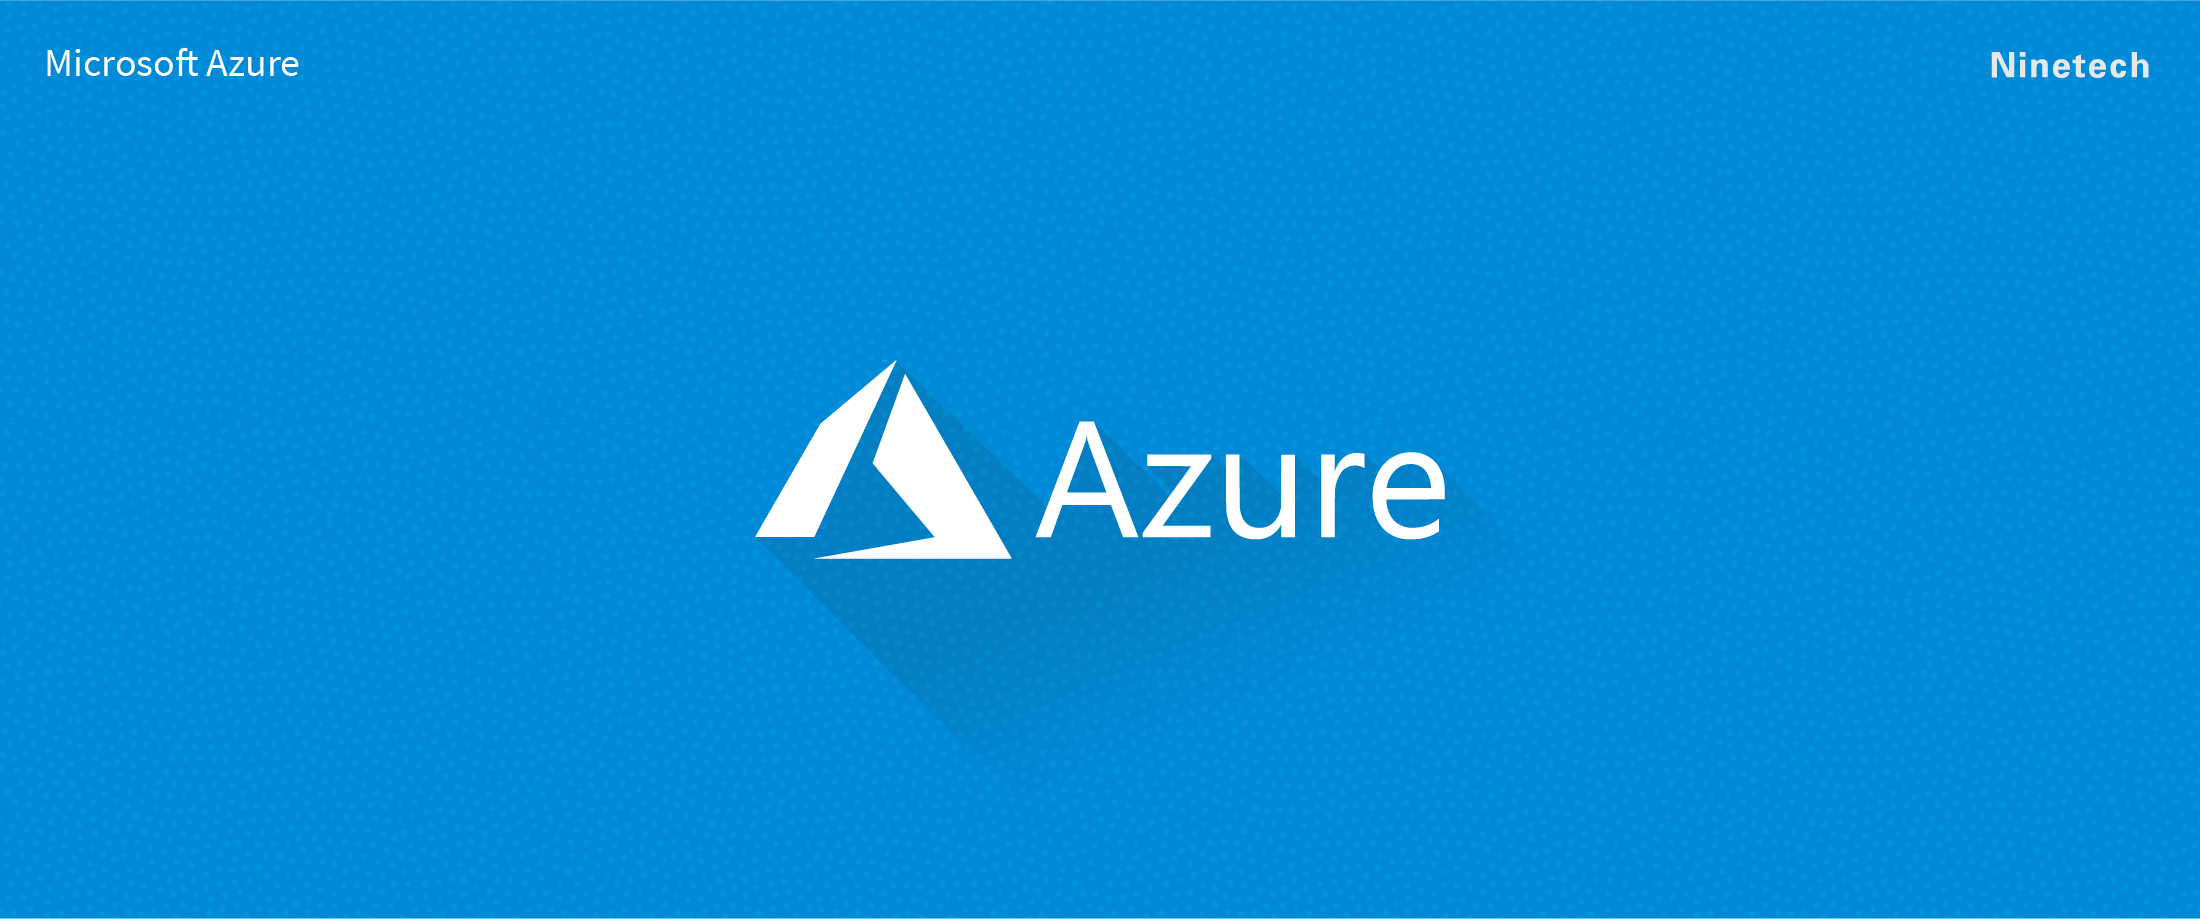 Fördelarna med Microsoft Azure som plattform